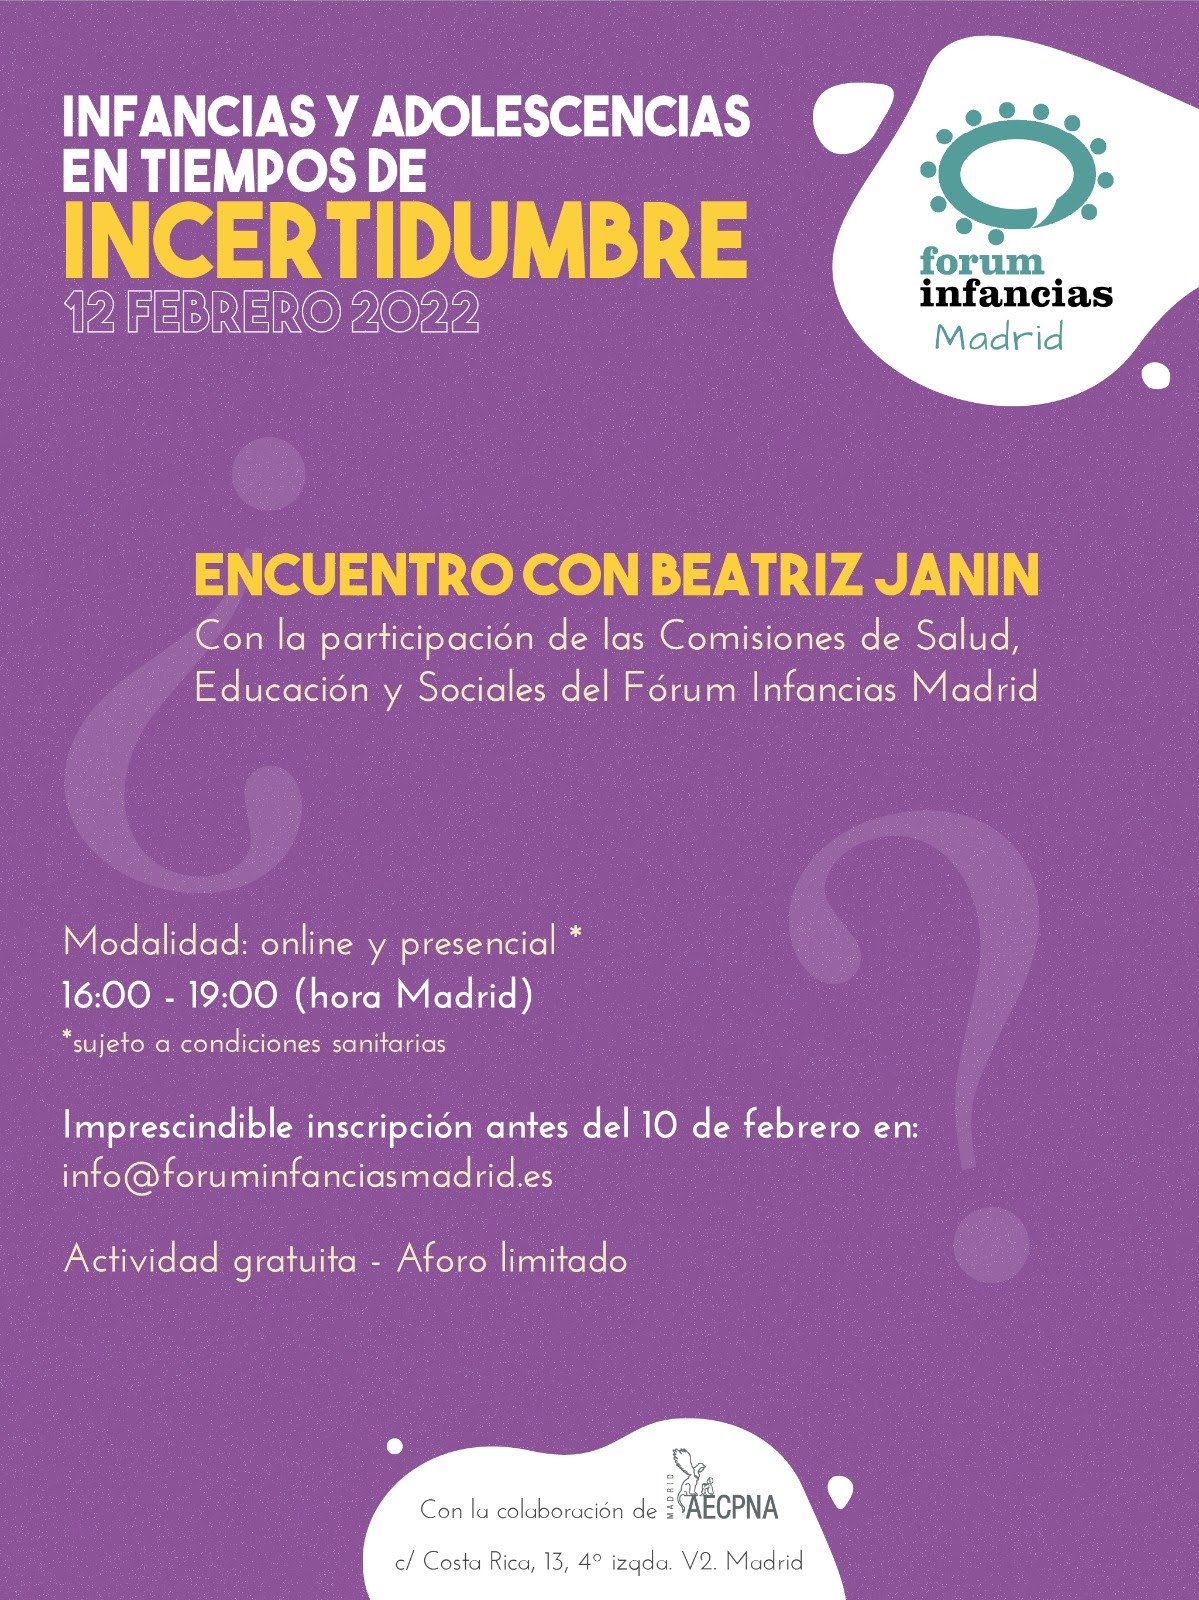 II Jornada de Fórum Infancias Madrid:  «Infancias y adolescencias en tiempos de incertidumbre». Sede de ACEPNA.